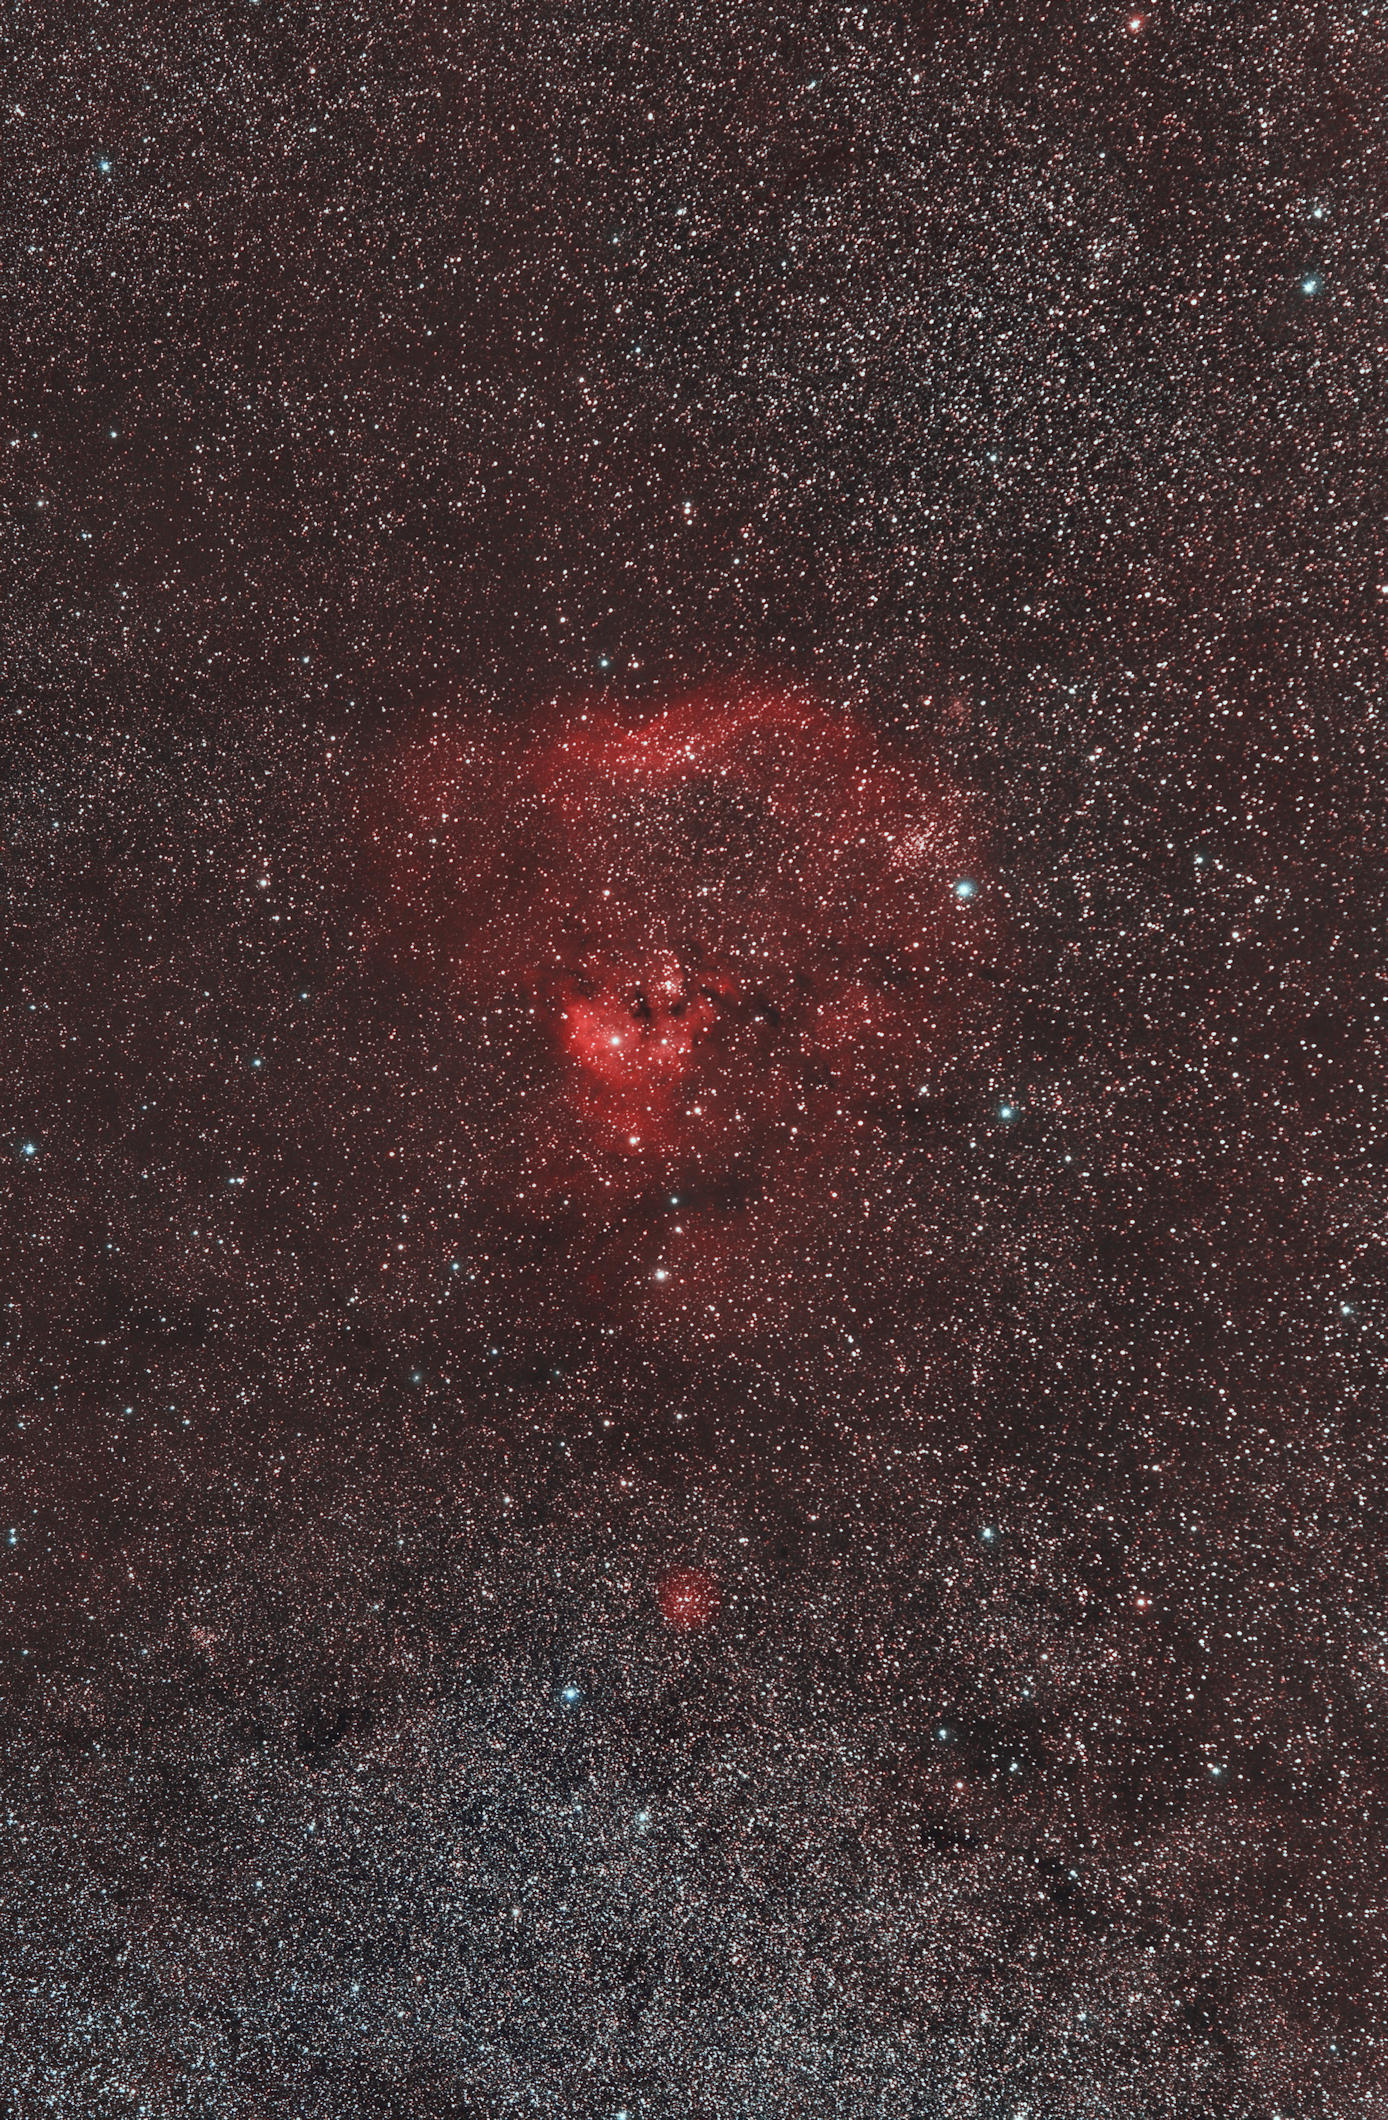 2016_09_05_NGC7822%20135mm%20RVB_Halpha_0_DxO10a_50pc.jpg